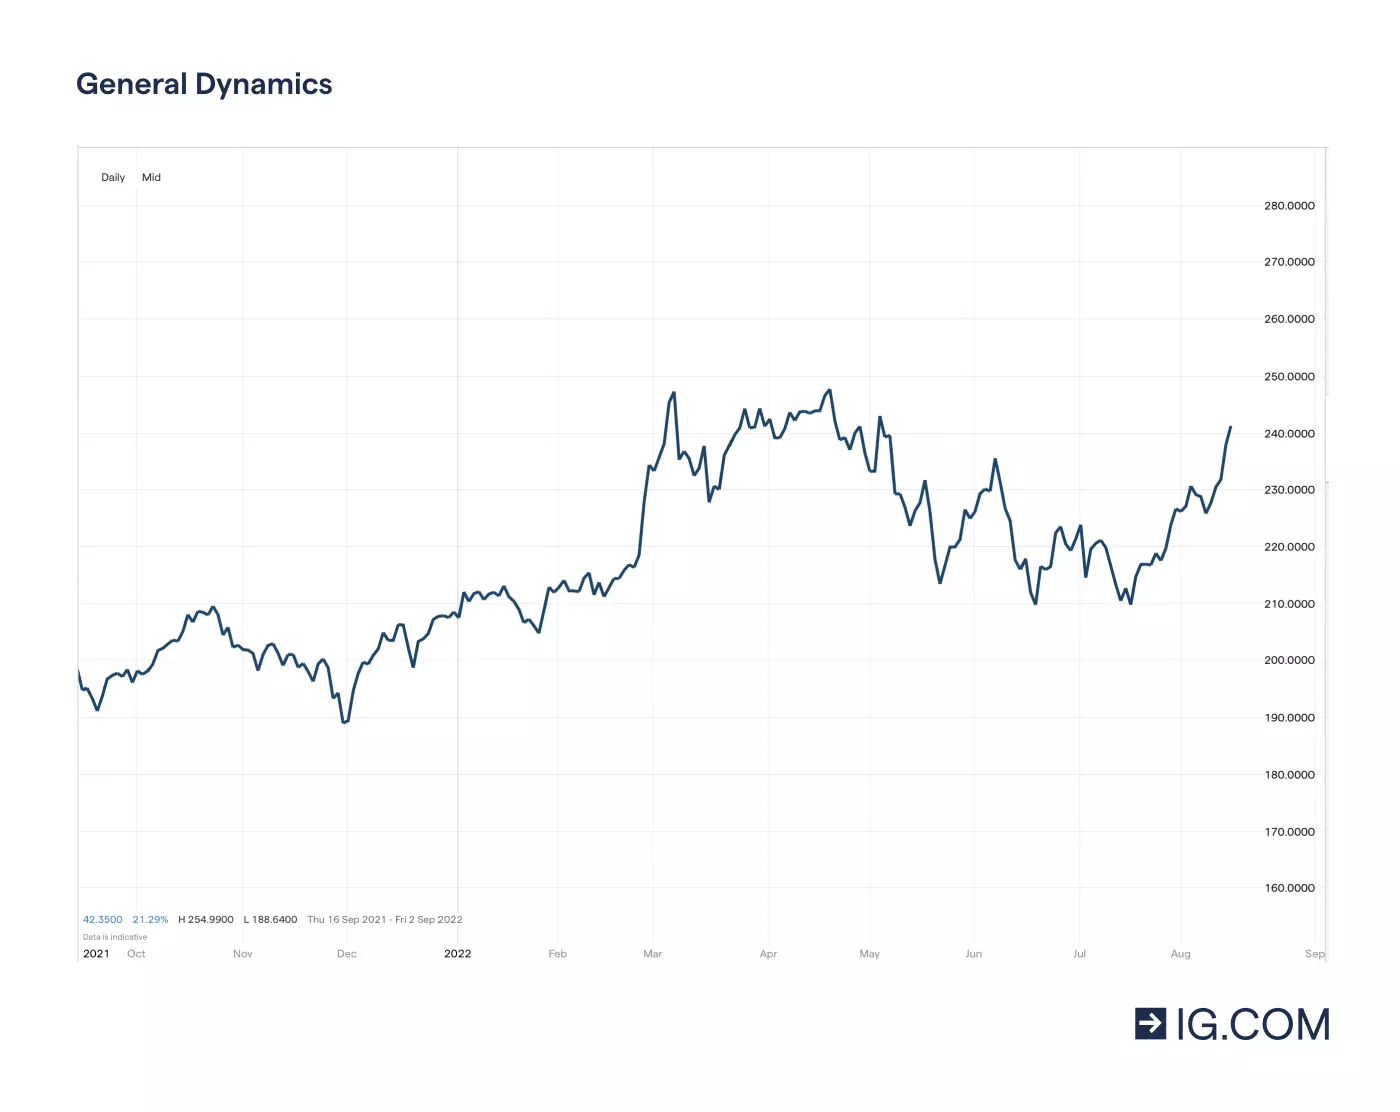 Grafiek met de prijsniveaus van General Dynamics-aandelen voor een periode van een jaar met hoogte- en dieptepunten, met het laagste punt van 191,44 in december 2021 voordat de aandelen stegen tot 248,25 in april 2022, met de huidige aandelenkoers op 217,08 in mei 2022.